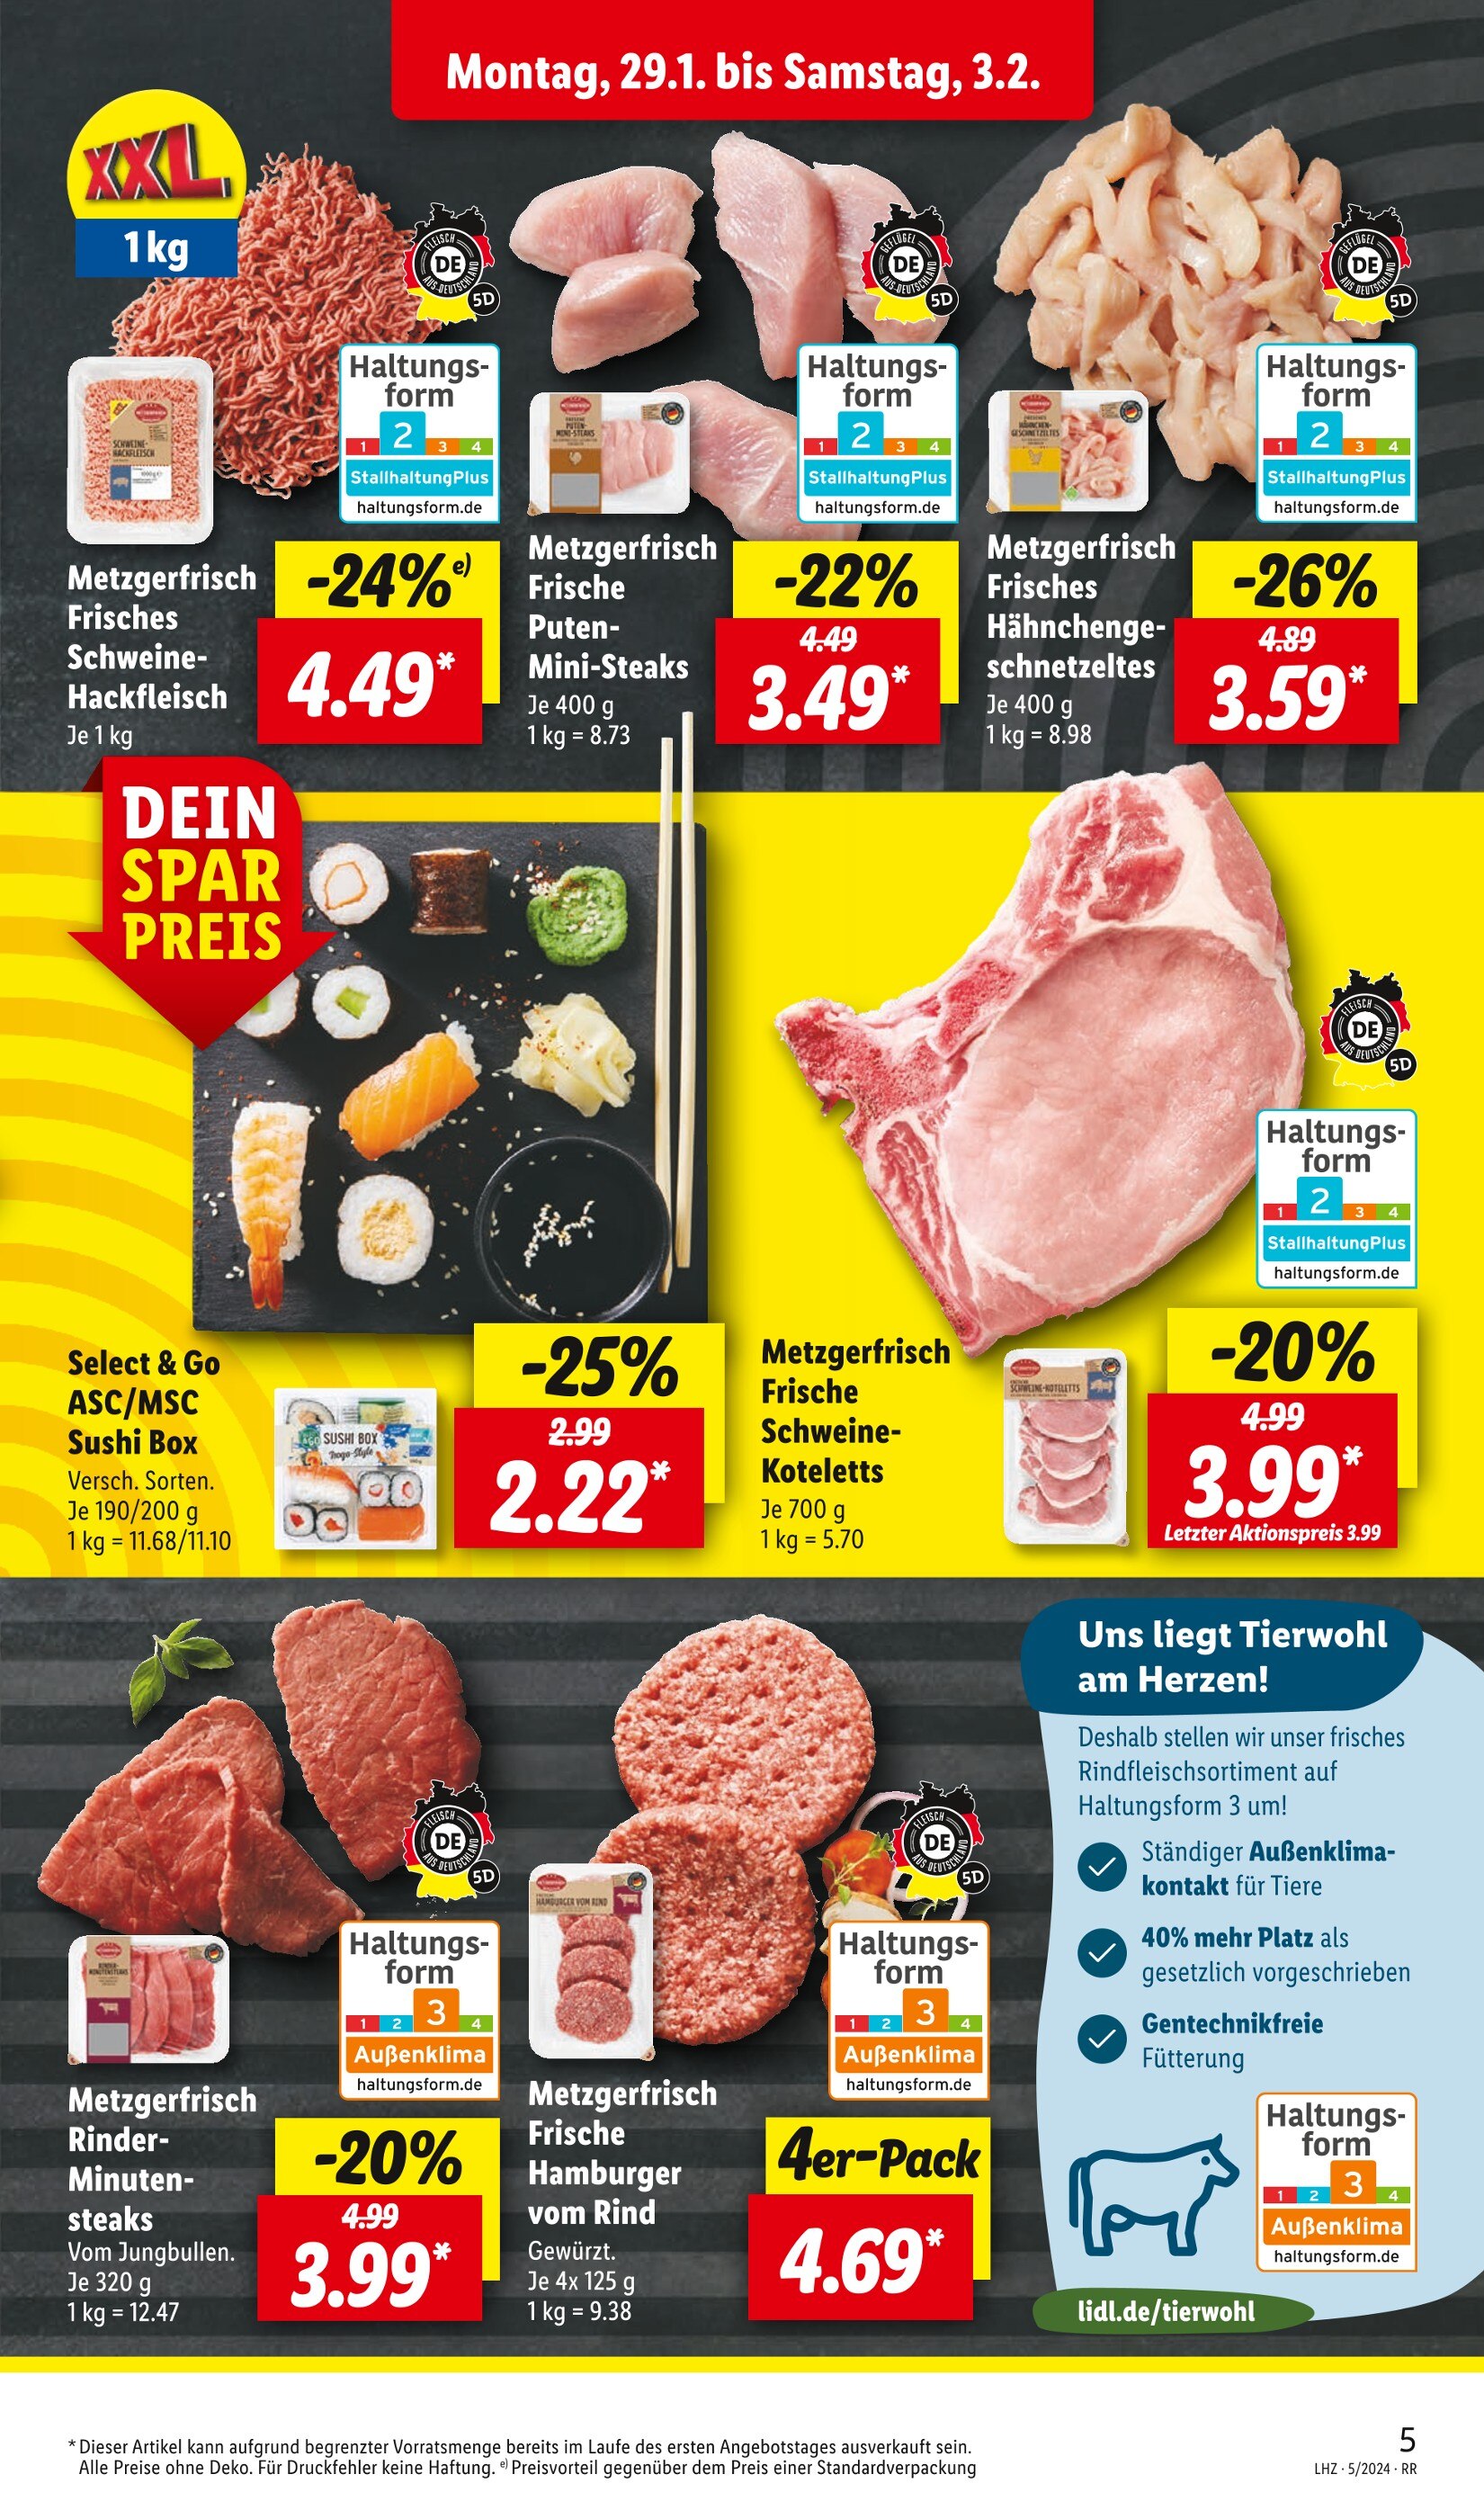 Steak in - günstig Gelsenkirchen Angebote 🔥 jetzt kaufen!